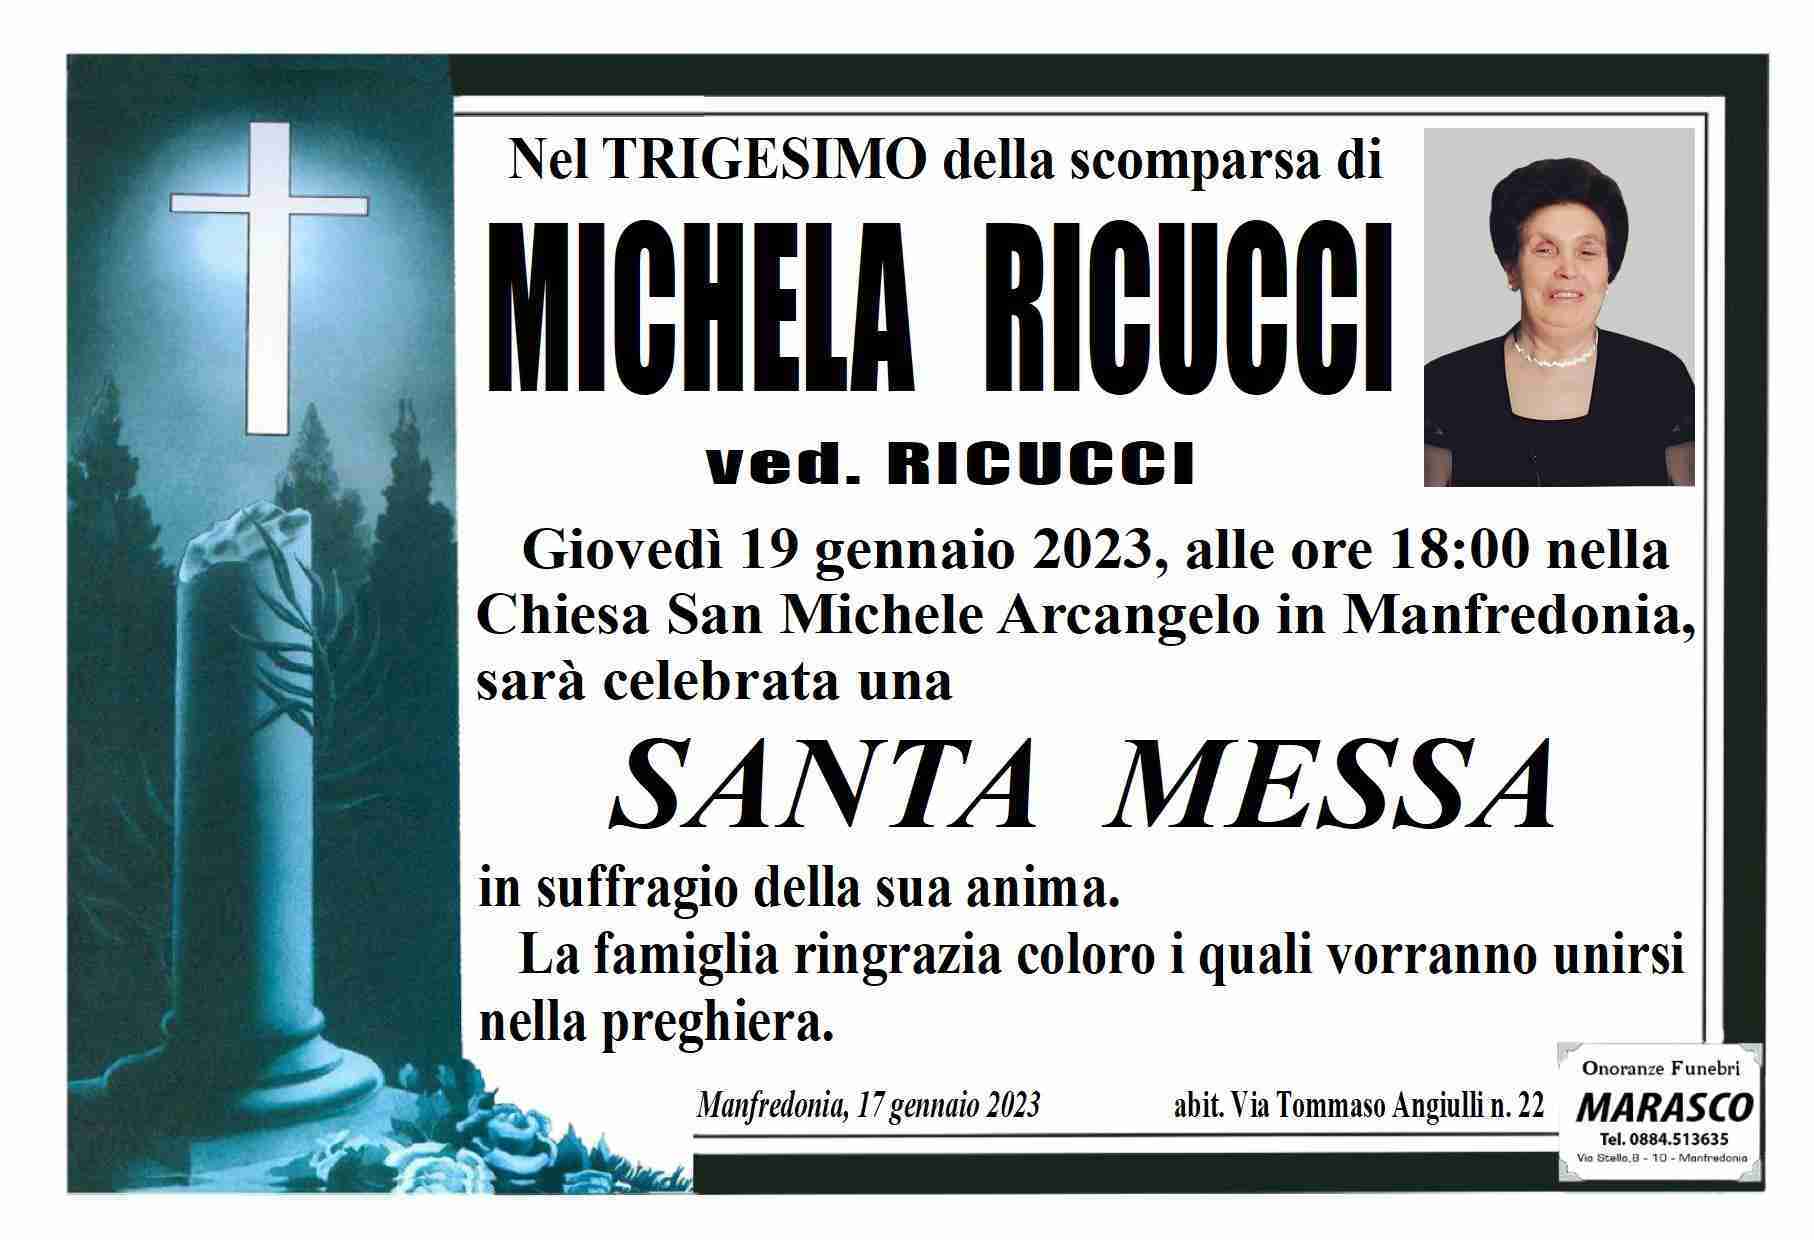 Michela Ricucci